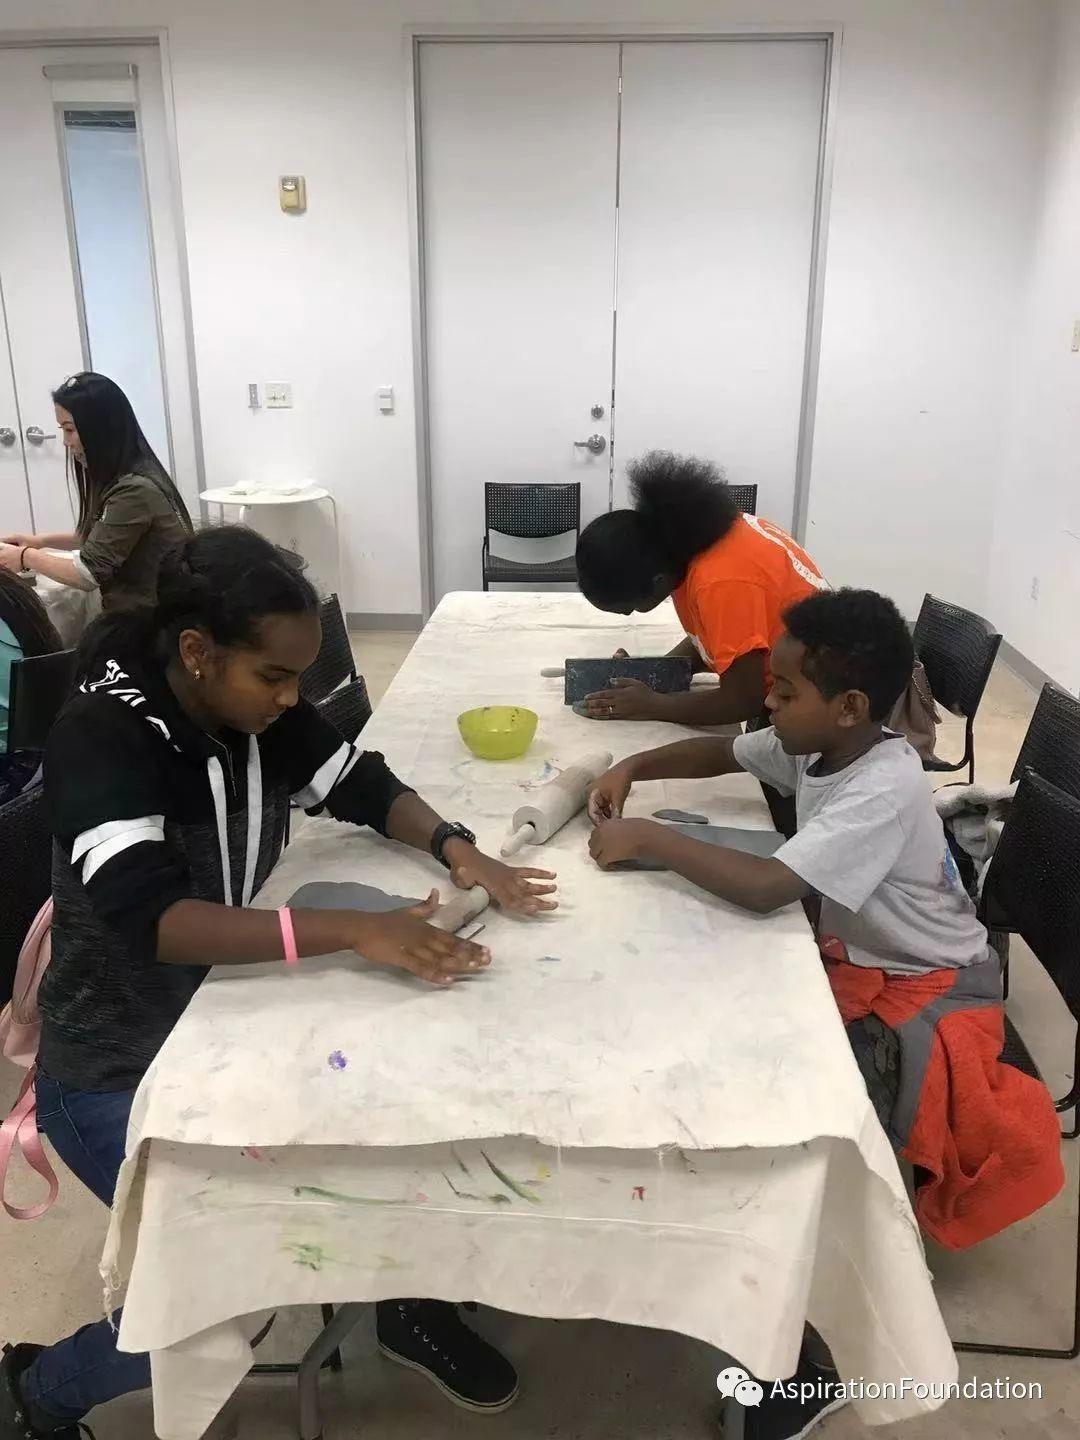 “希望之源慈善基金会”携手PAIR为难民儿童开办课外辅导艺术课